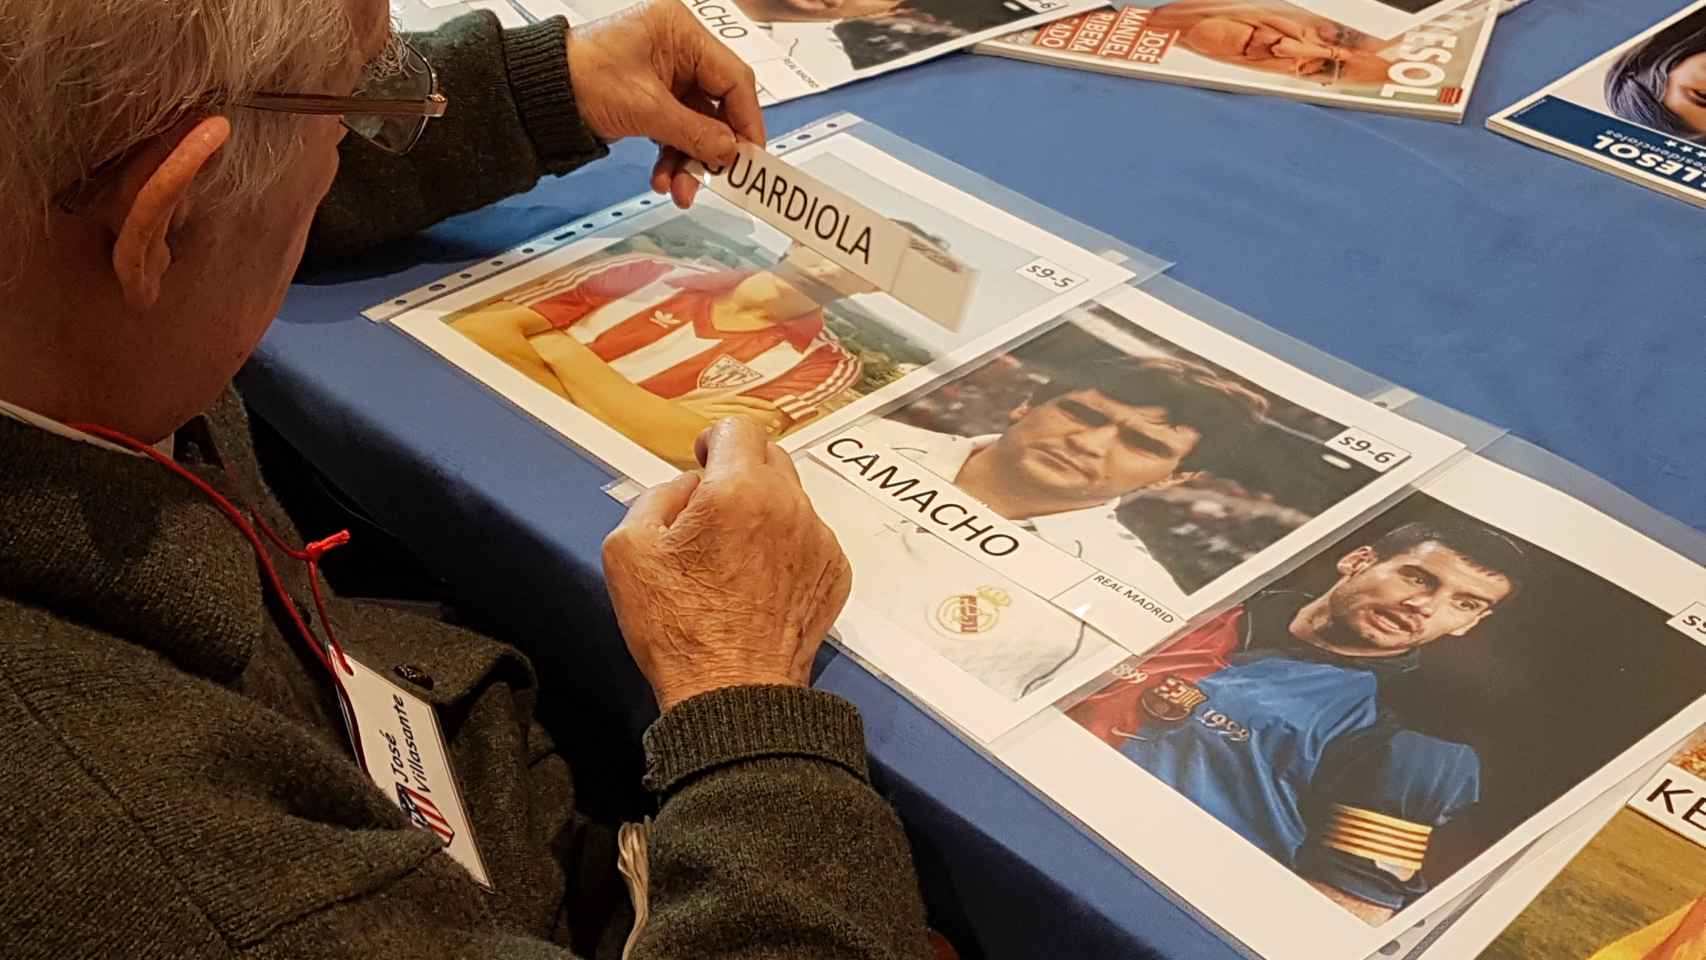 Jesús intenta colocar el nombre de Guardiola en la fotografía correspondiente